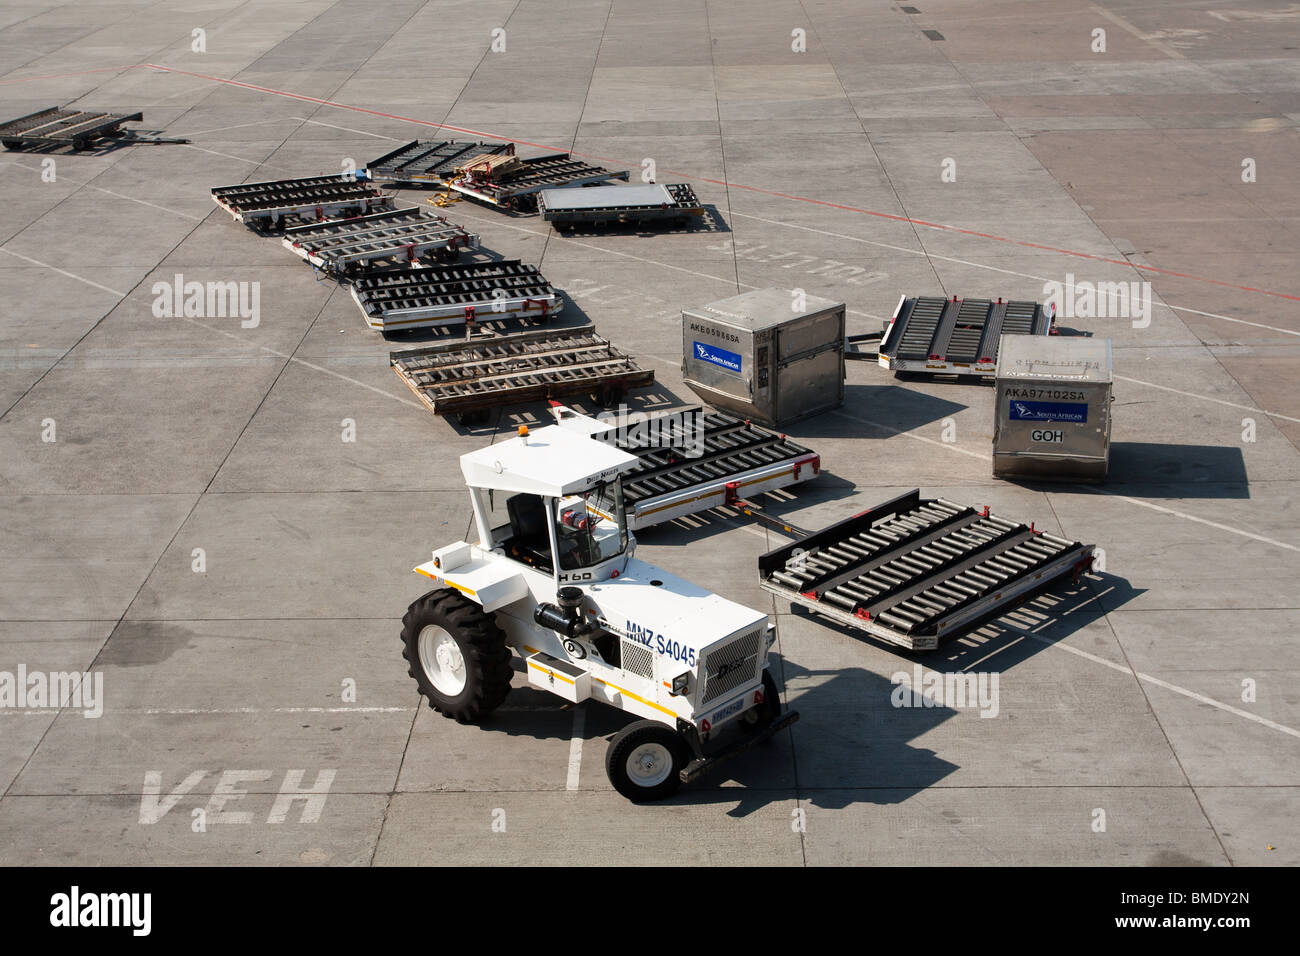 Tracteur à bagages, O.R. L'aéroport international OR Tambo, anciennement de l'Aéroport International de Johannesburg, Afrique du Sud Banque D'Images